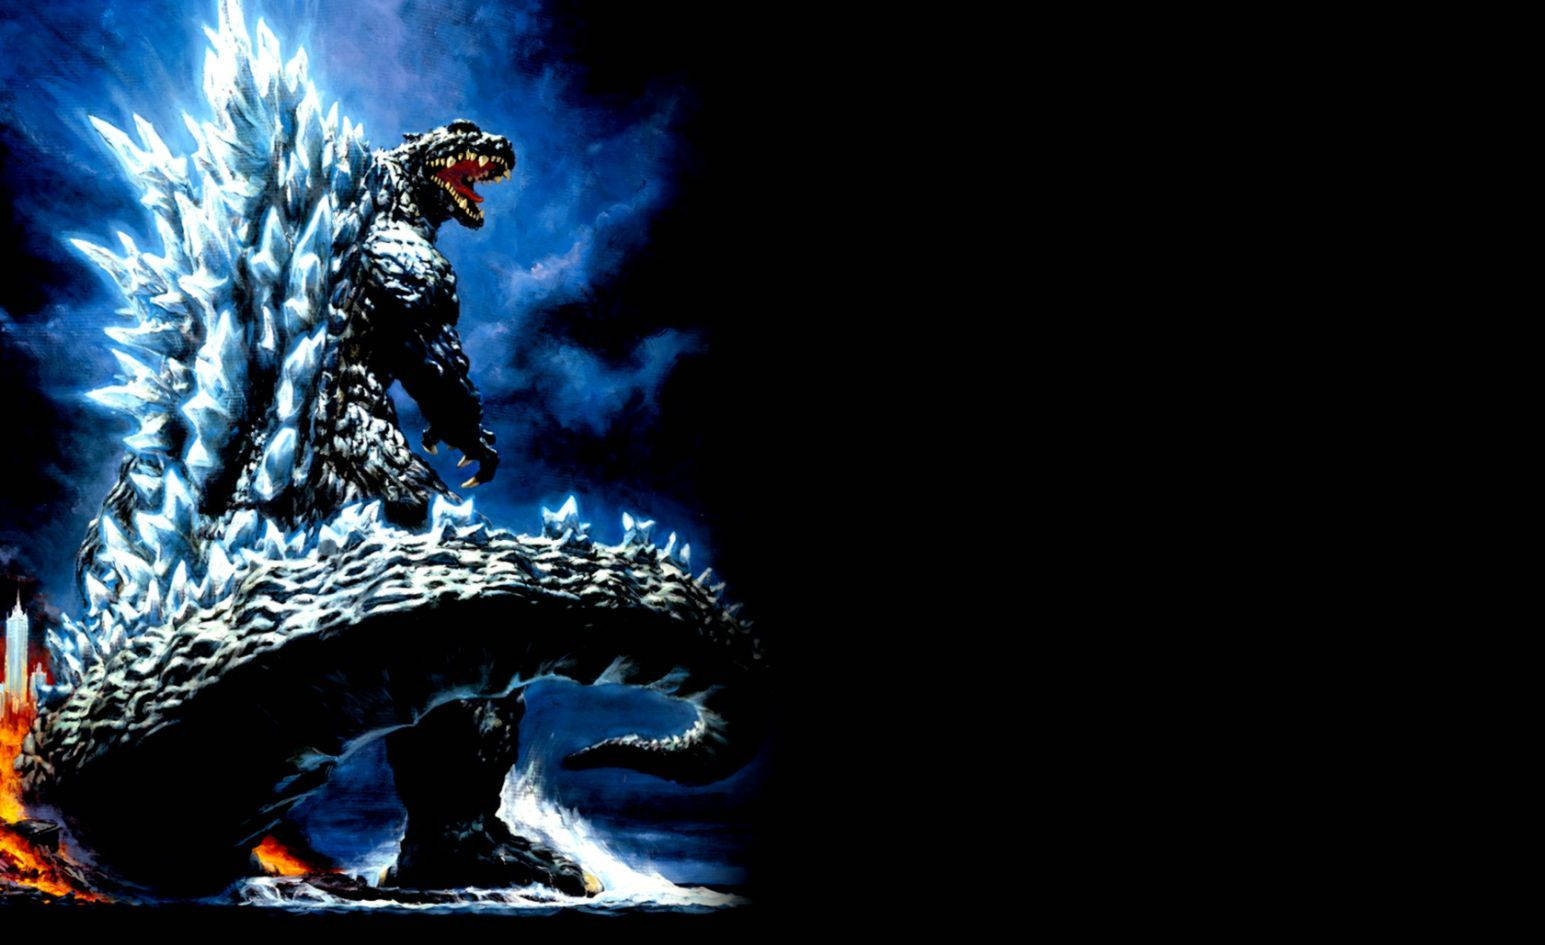 Godzilla 1545X945 Wallpaper and Background Image